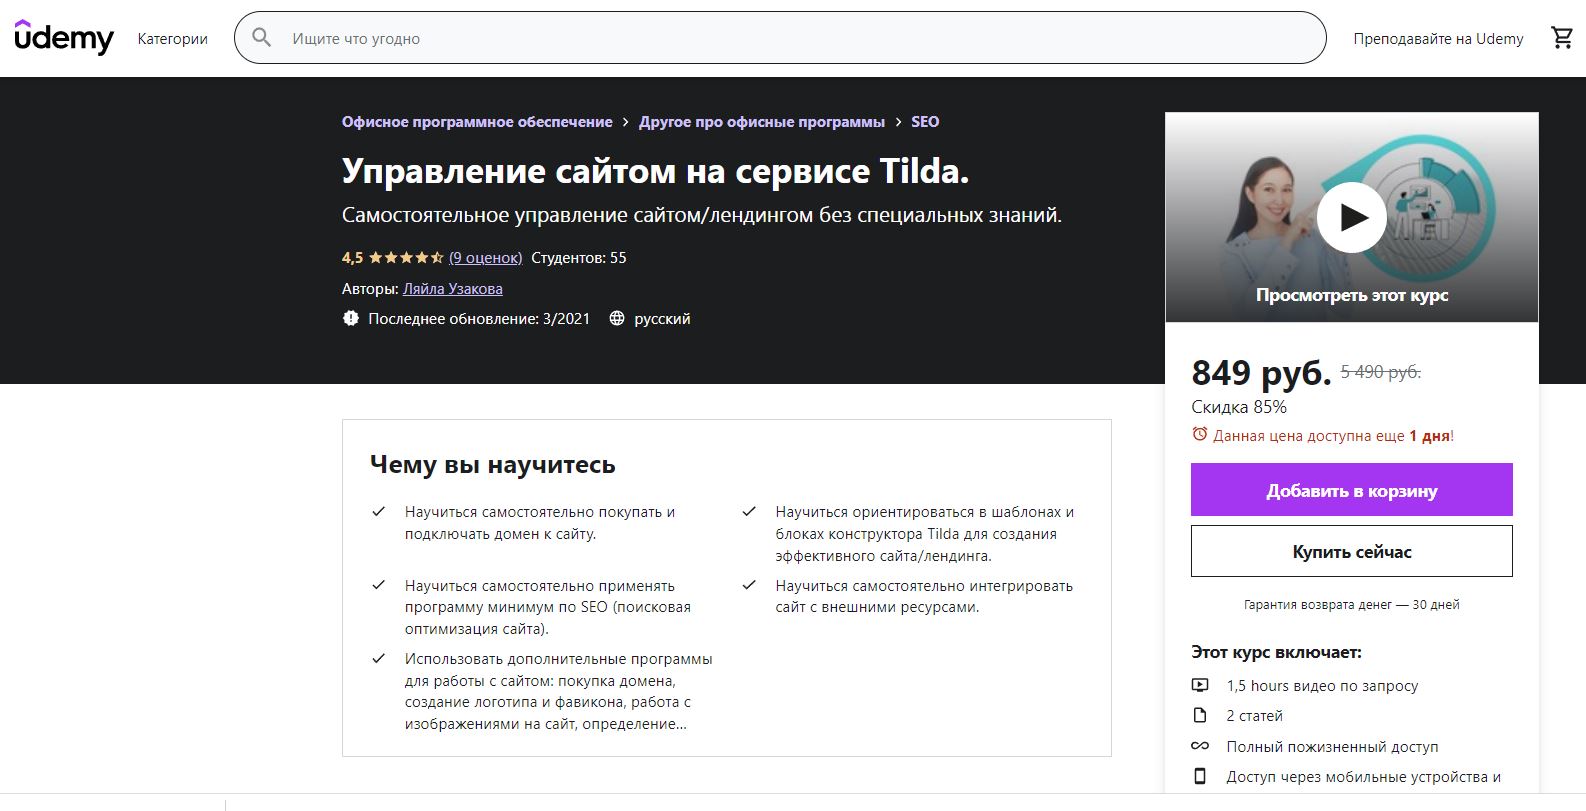 ТОП-6 лучших онлайн-курсов по созданию сайтов на Тильда - Udemy. «Управление сайтом на сервисе Tilda» - фото